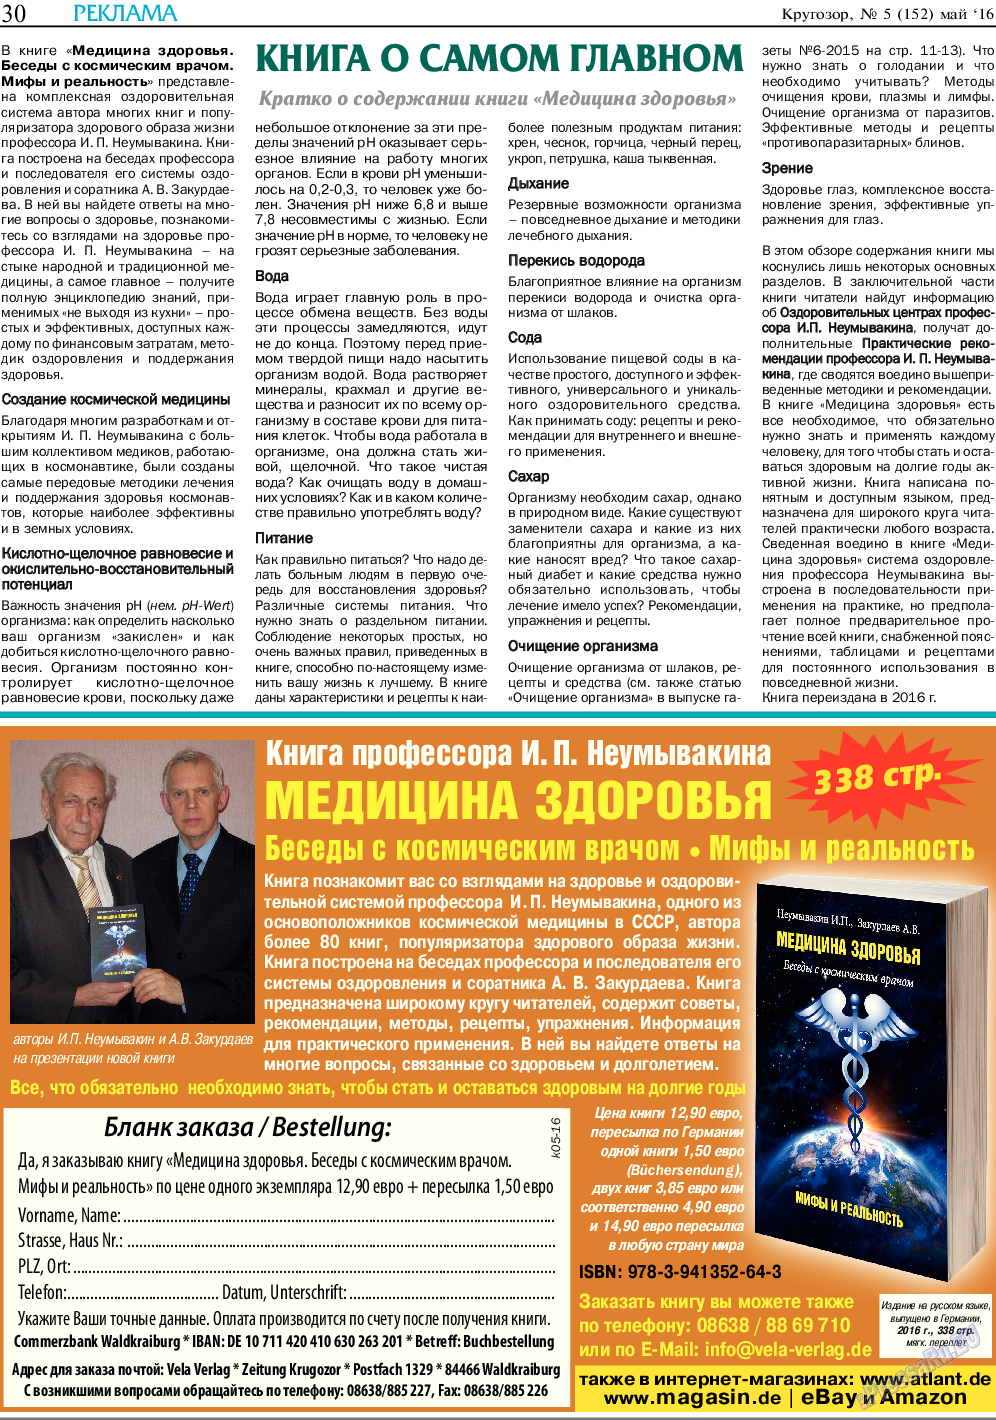 Кругозор, газета. 2016 №5 стр.30